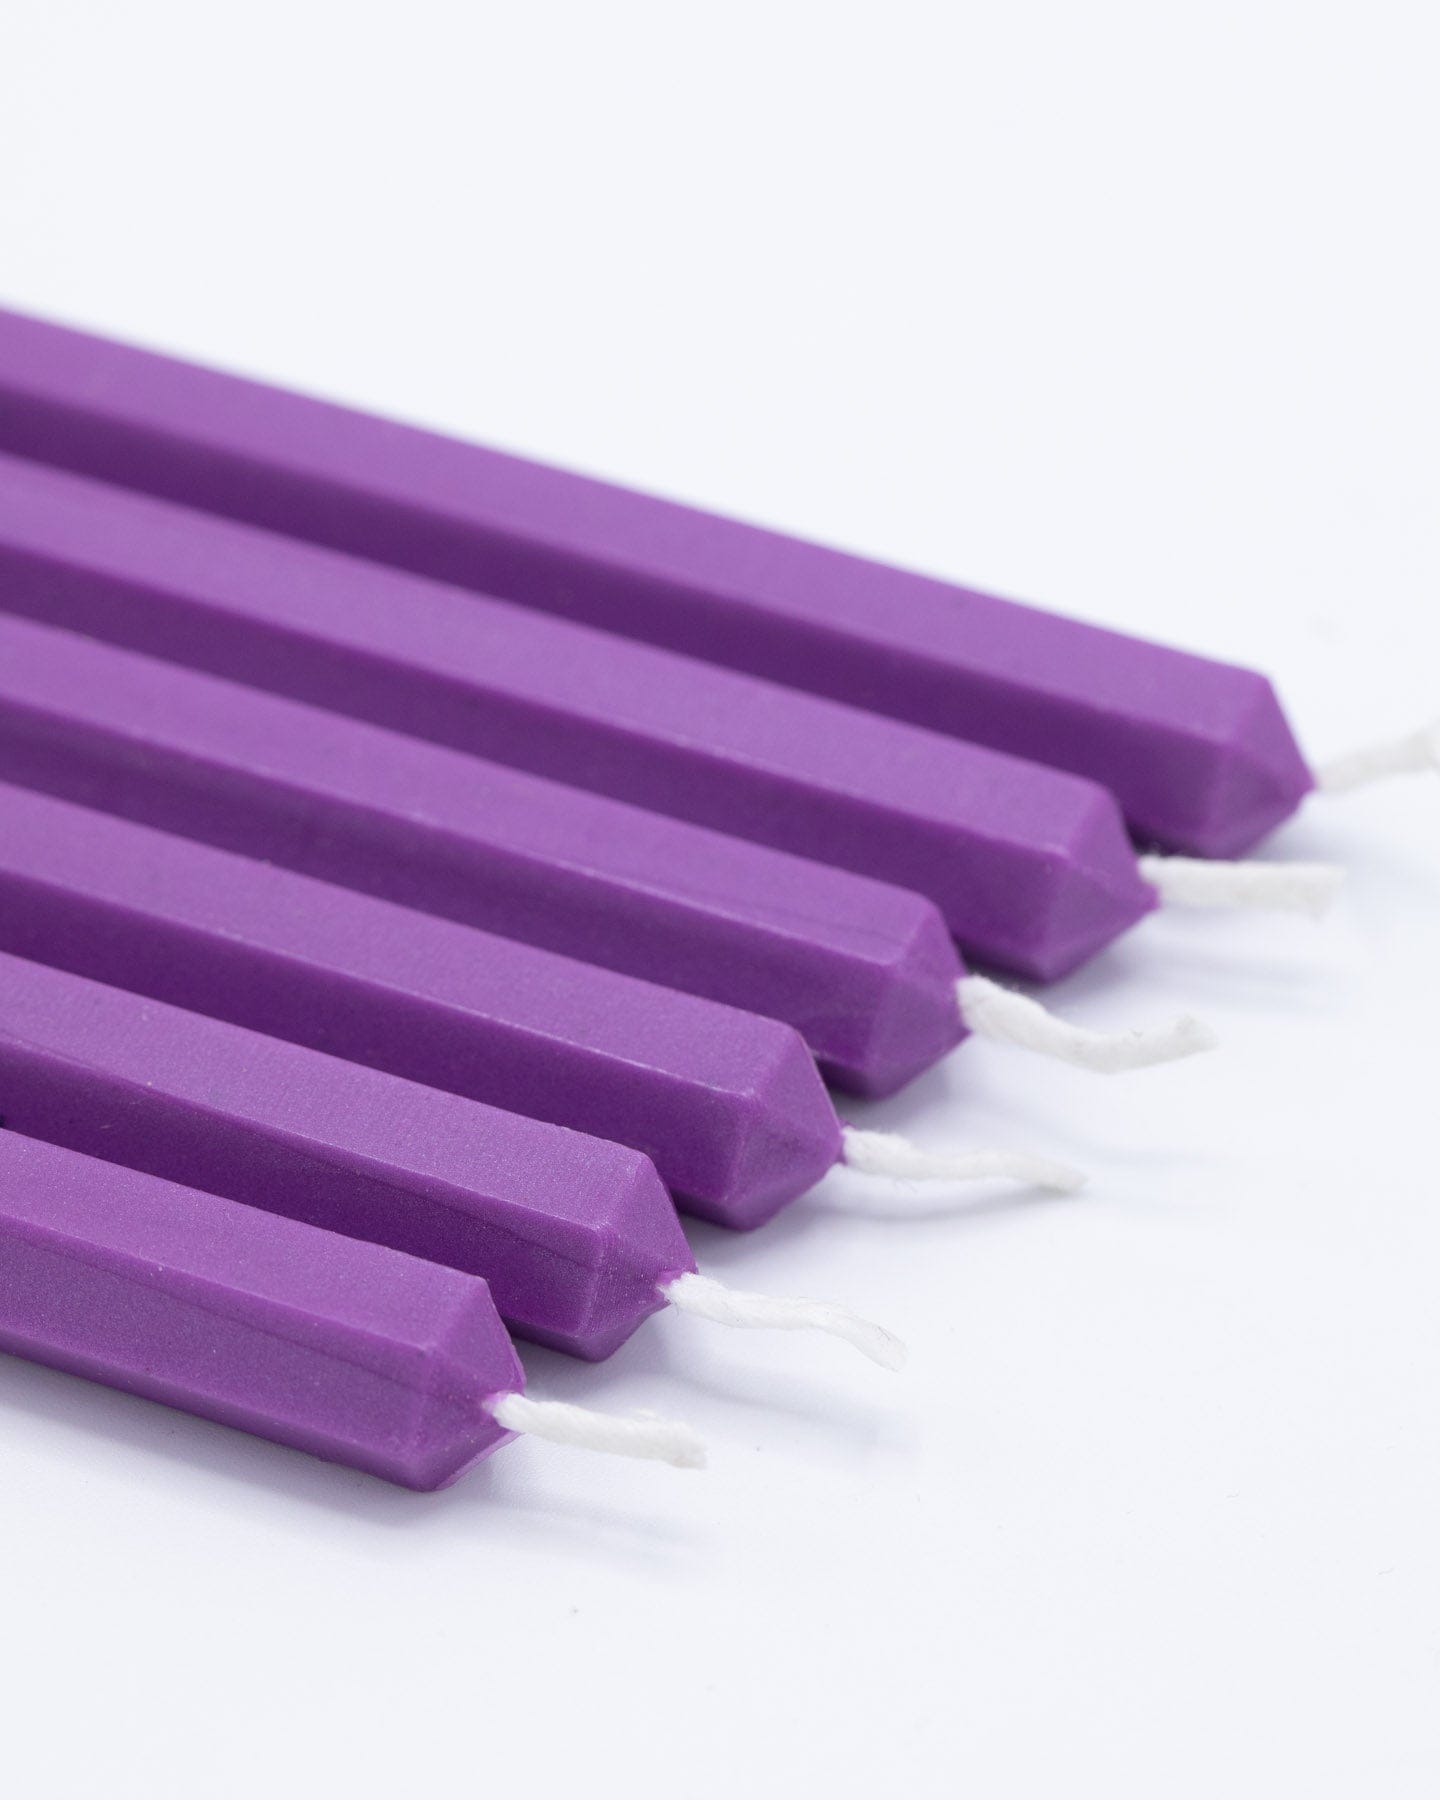 Violet Plum Sealing Wax Sticks Cognitive Surplus